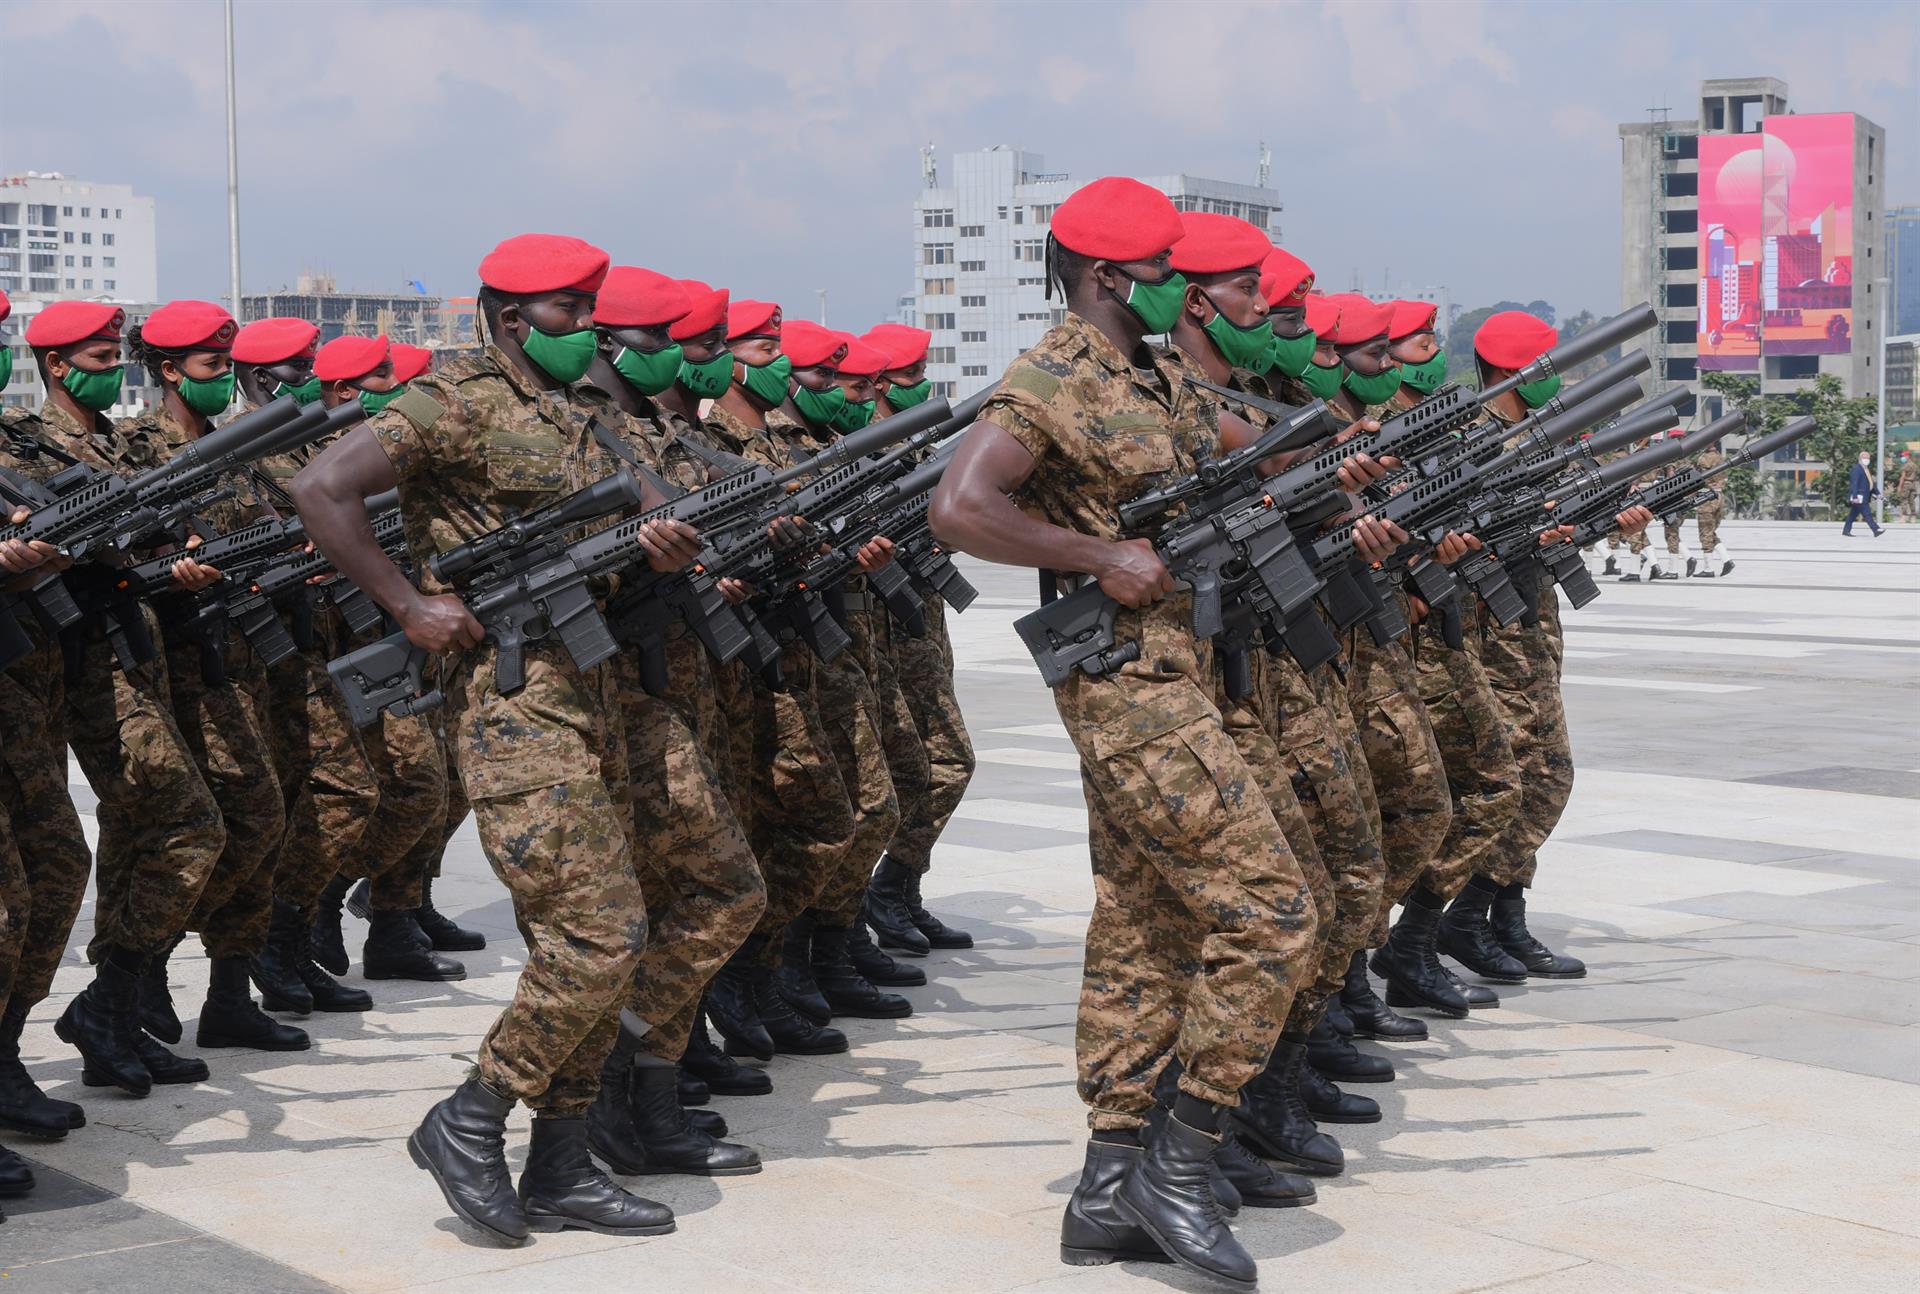 Efectivos de la Defensa Nacional de Etiopía realizan ejercicios en un desfile militar en Addis Abeba, Etiopía, el 10 de septiembre de 2020. EFE/EPA/STR